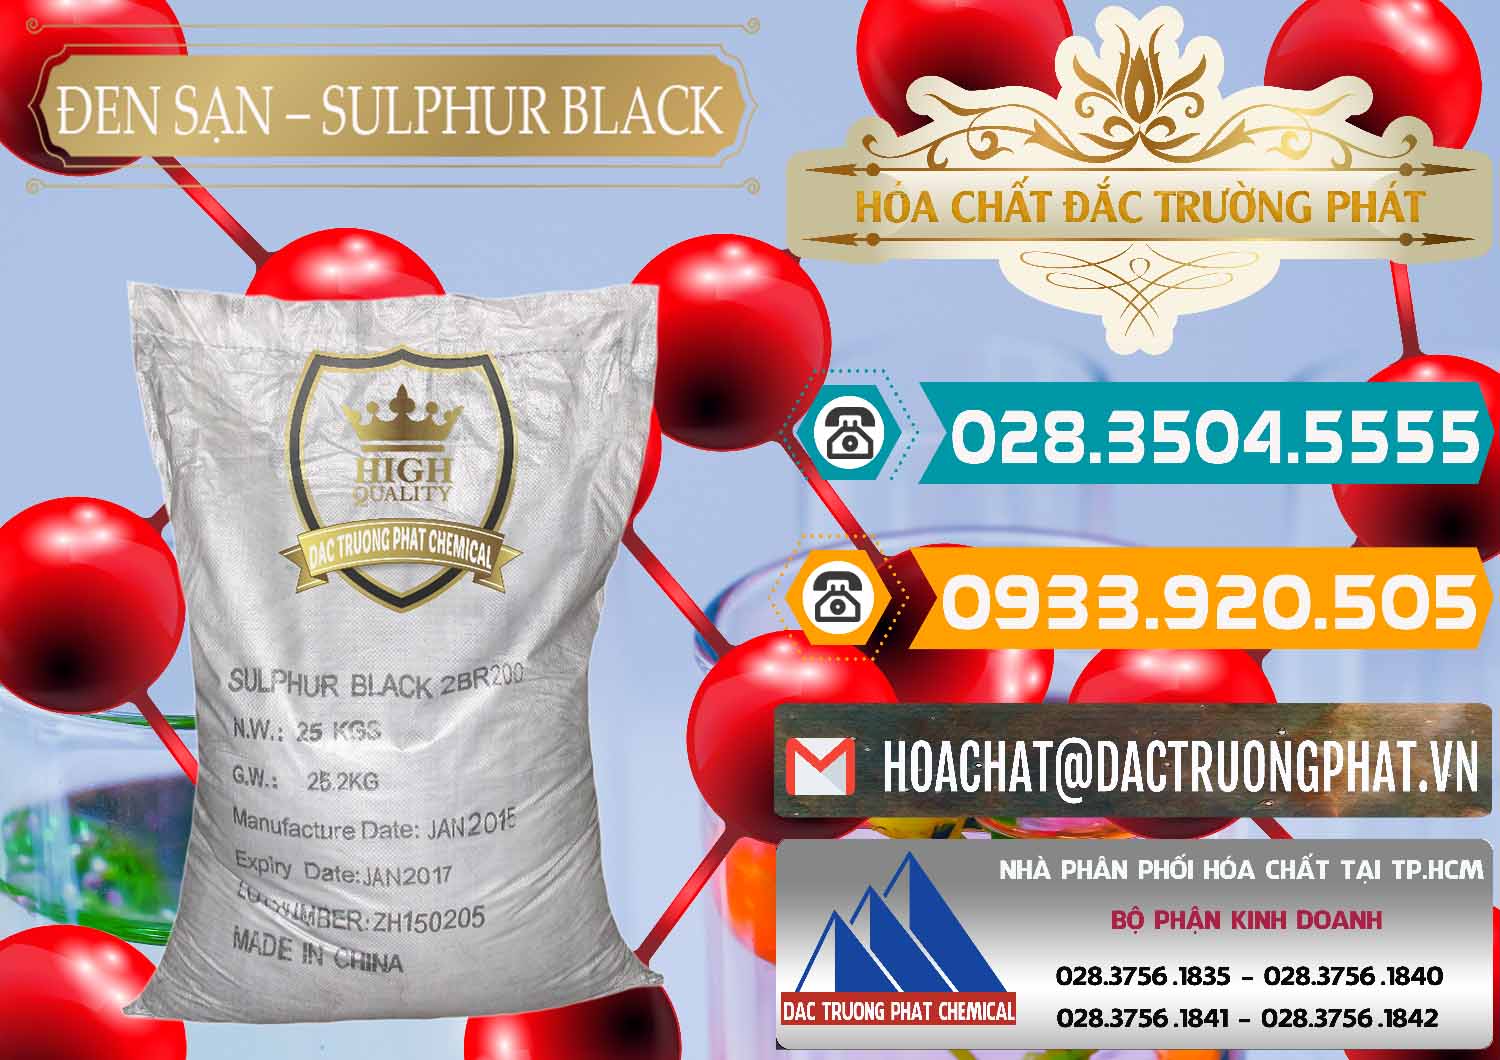 Cty kinh doanh ( bán ) Đen Sạn – Sulphur Black Trung Quốc China - 0062 - Phân phối ( kinh doanh ) hóa chất tại TP.HCM - congtyhoachat.vn